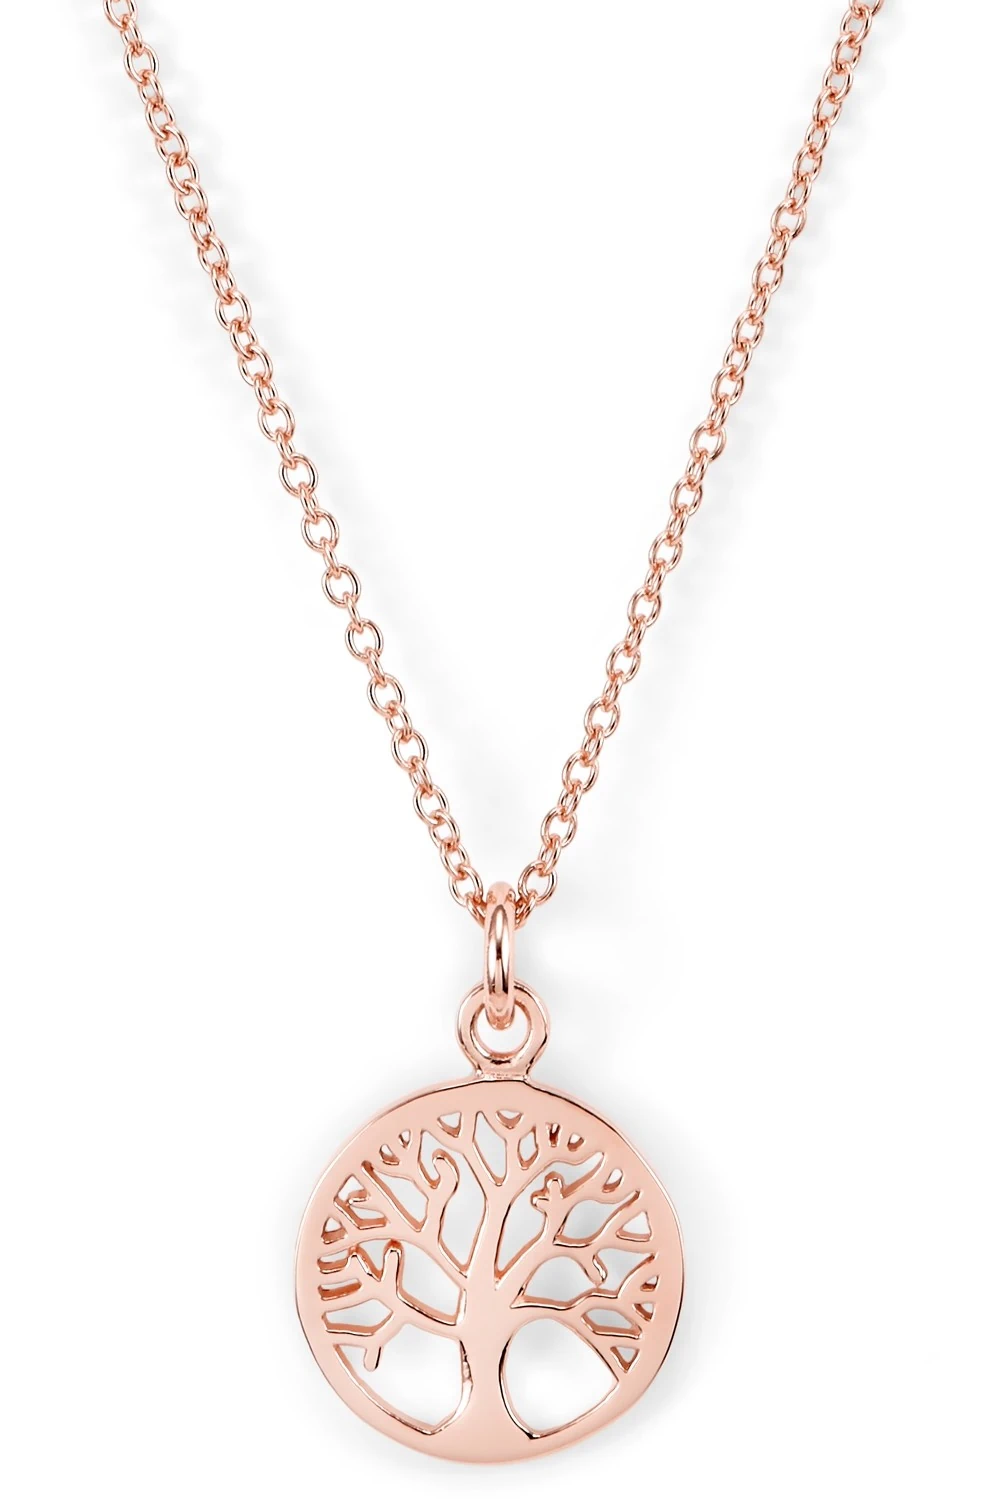 Halskette Lebensbaum - 925 Sterlingsilber kaufen bei online